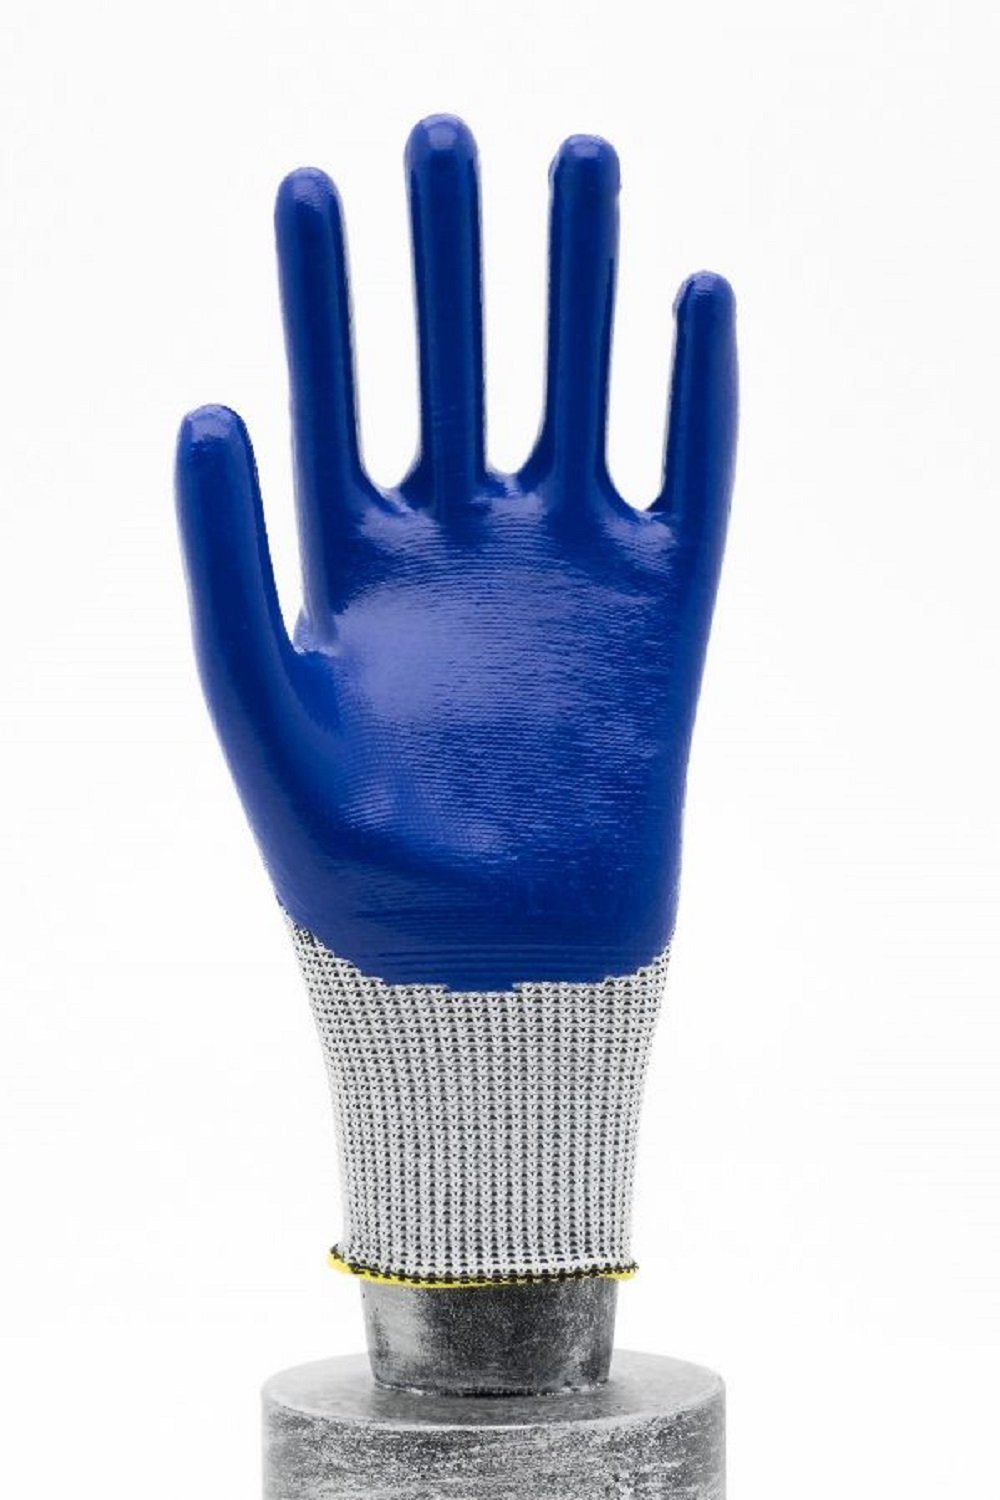 EP-1302 Handschuhe Poleyester Beschichtung Faba Sicherheits-Handschuhe Strickhandschuhe 4 / EN388 Nitrilbeschichtete Arbeitshandschuh-Set 3 HALAT Arbeitshandschuhe